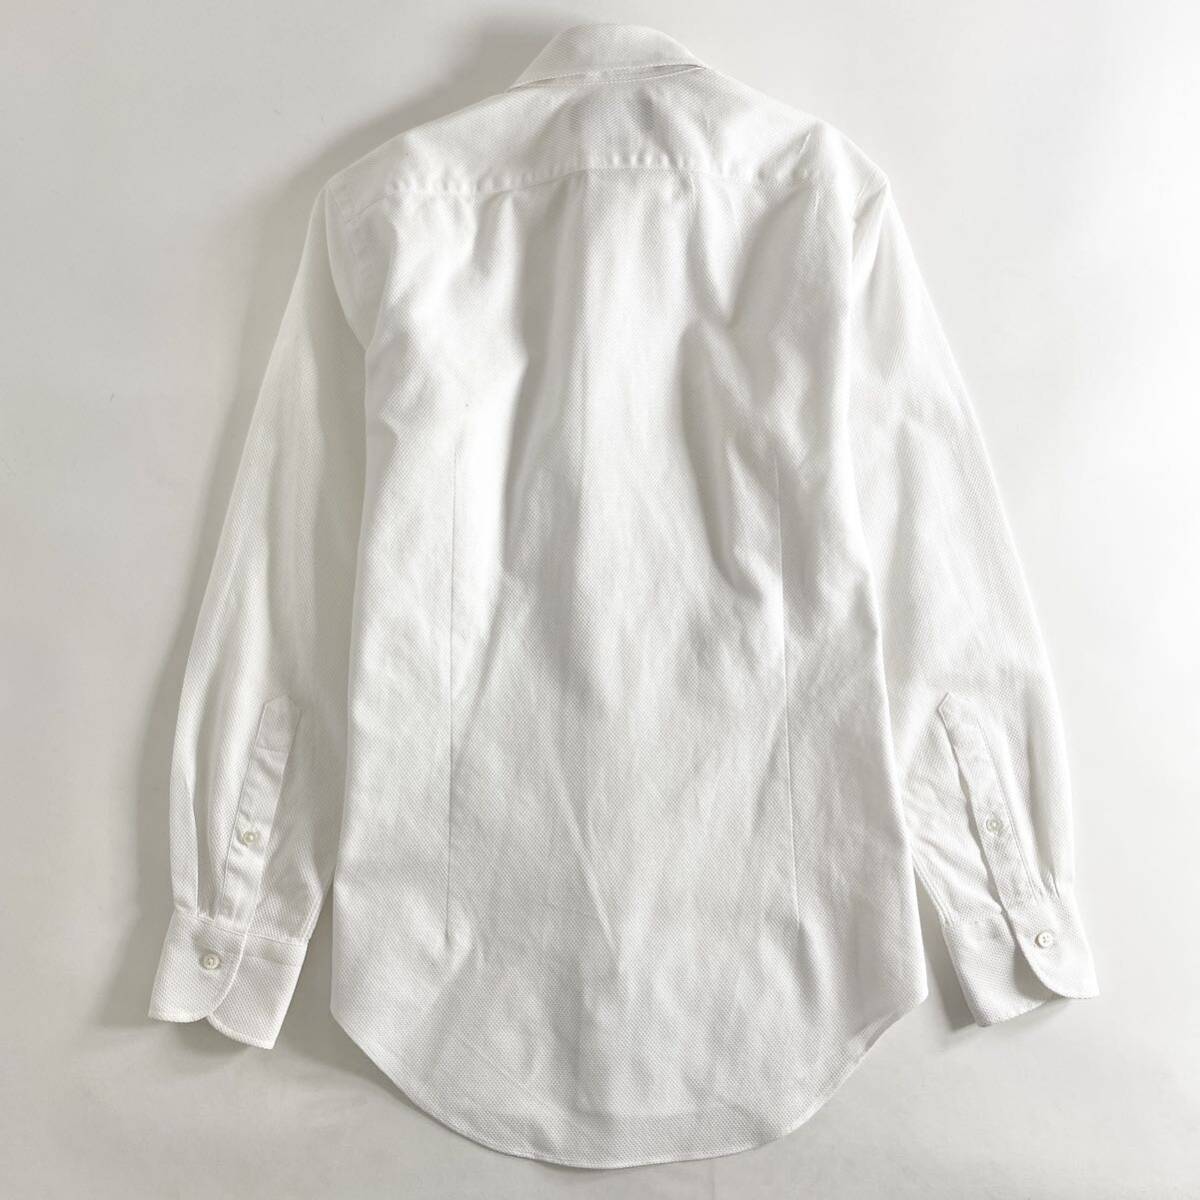 Hc22-9 日本製 Maker's Shirt 鎌倉シャツ 225Liberty 長袖シャツ ドレスシャツ LENO CLOTH ワイシャツ 14.5/37 M ホワイト 無地 メンズ_画像2